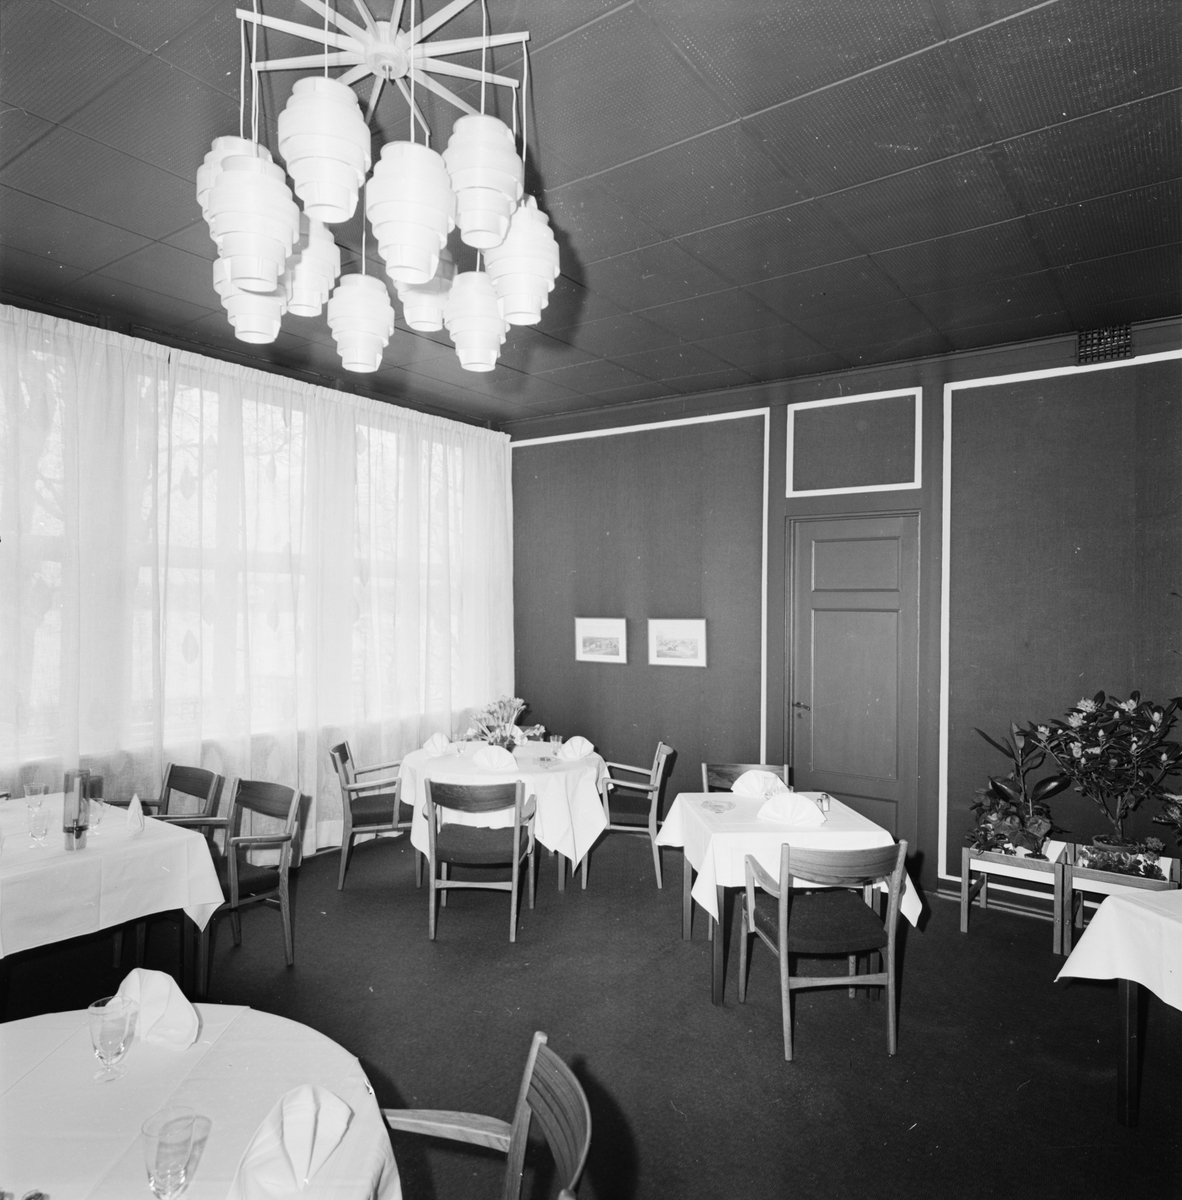 Skarholmen - "både ljus och dunkel i ny restaurangmiljö", Sunnersta, Uppsala 1962